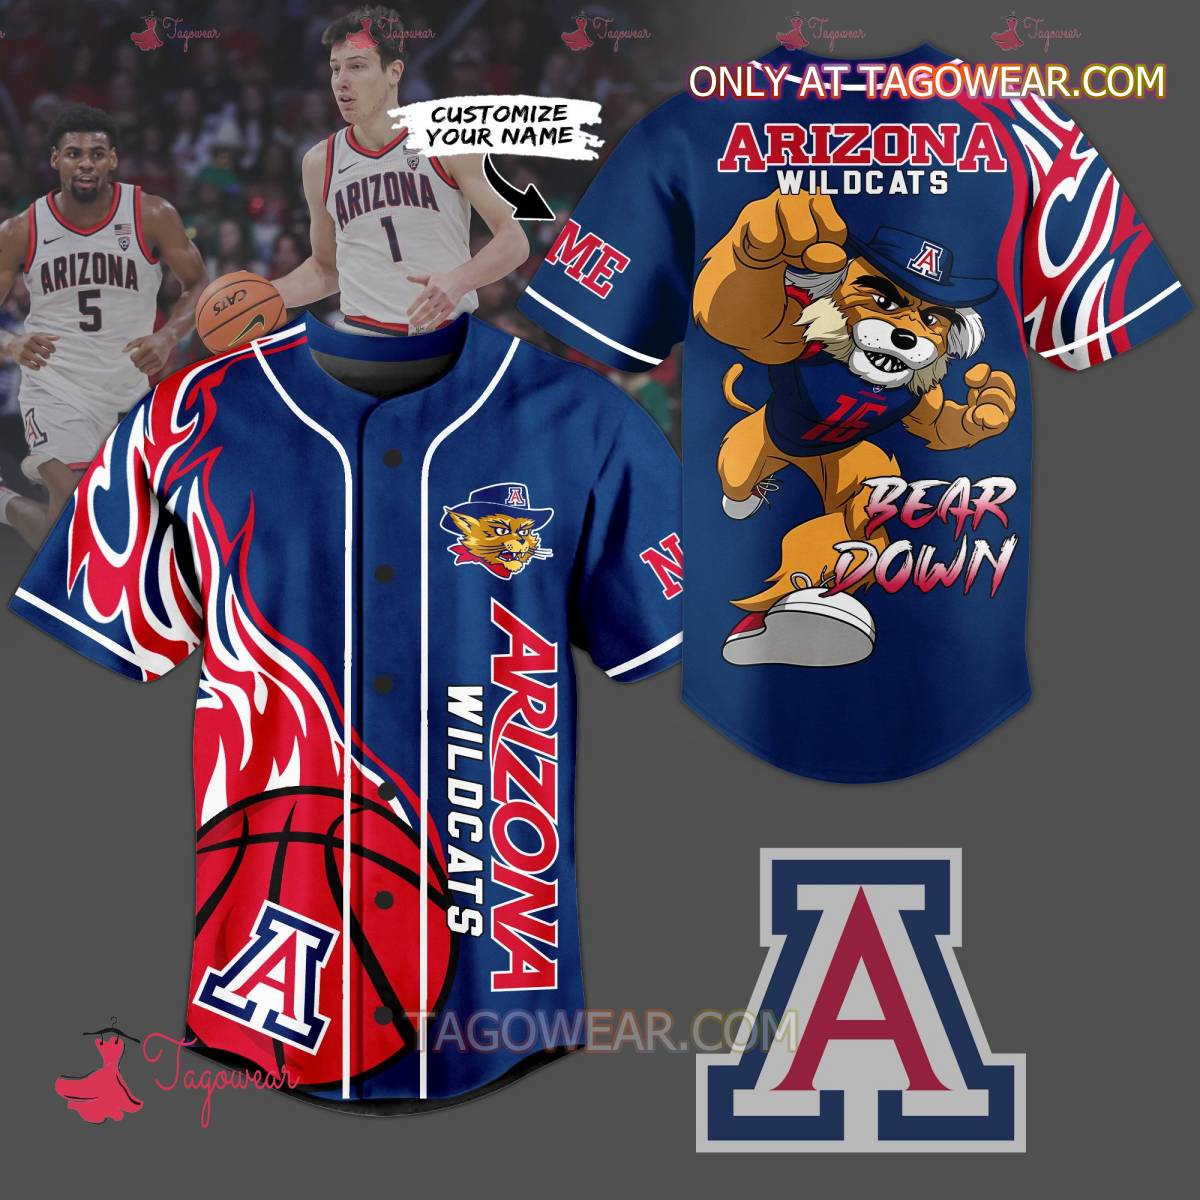 Arizona Wildcats Bear Down Fire Ball Personalized Baseball Jersey